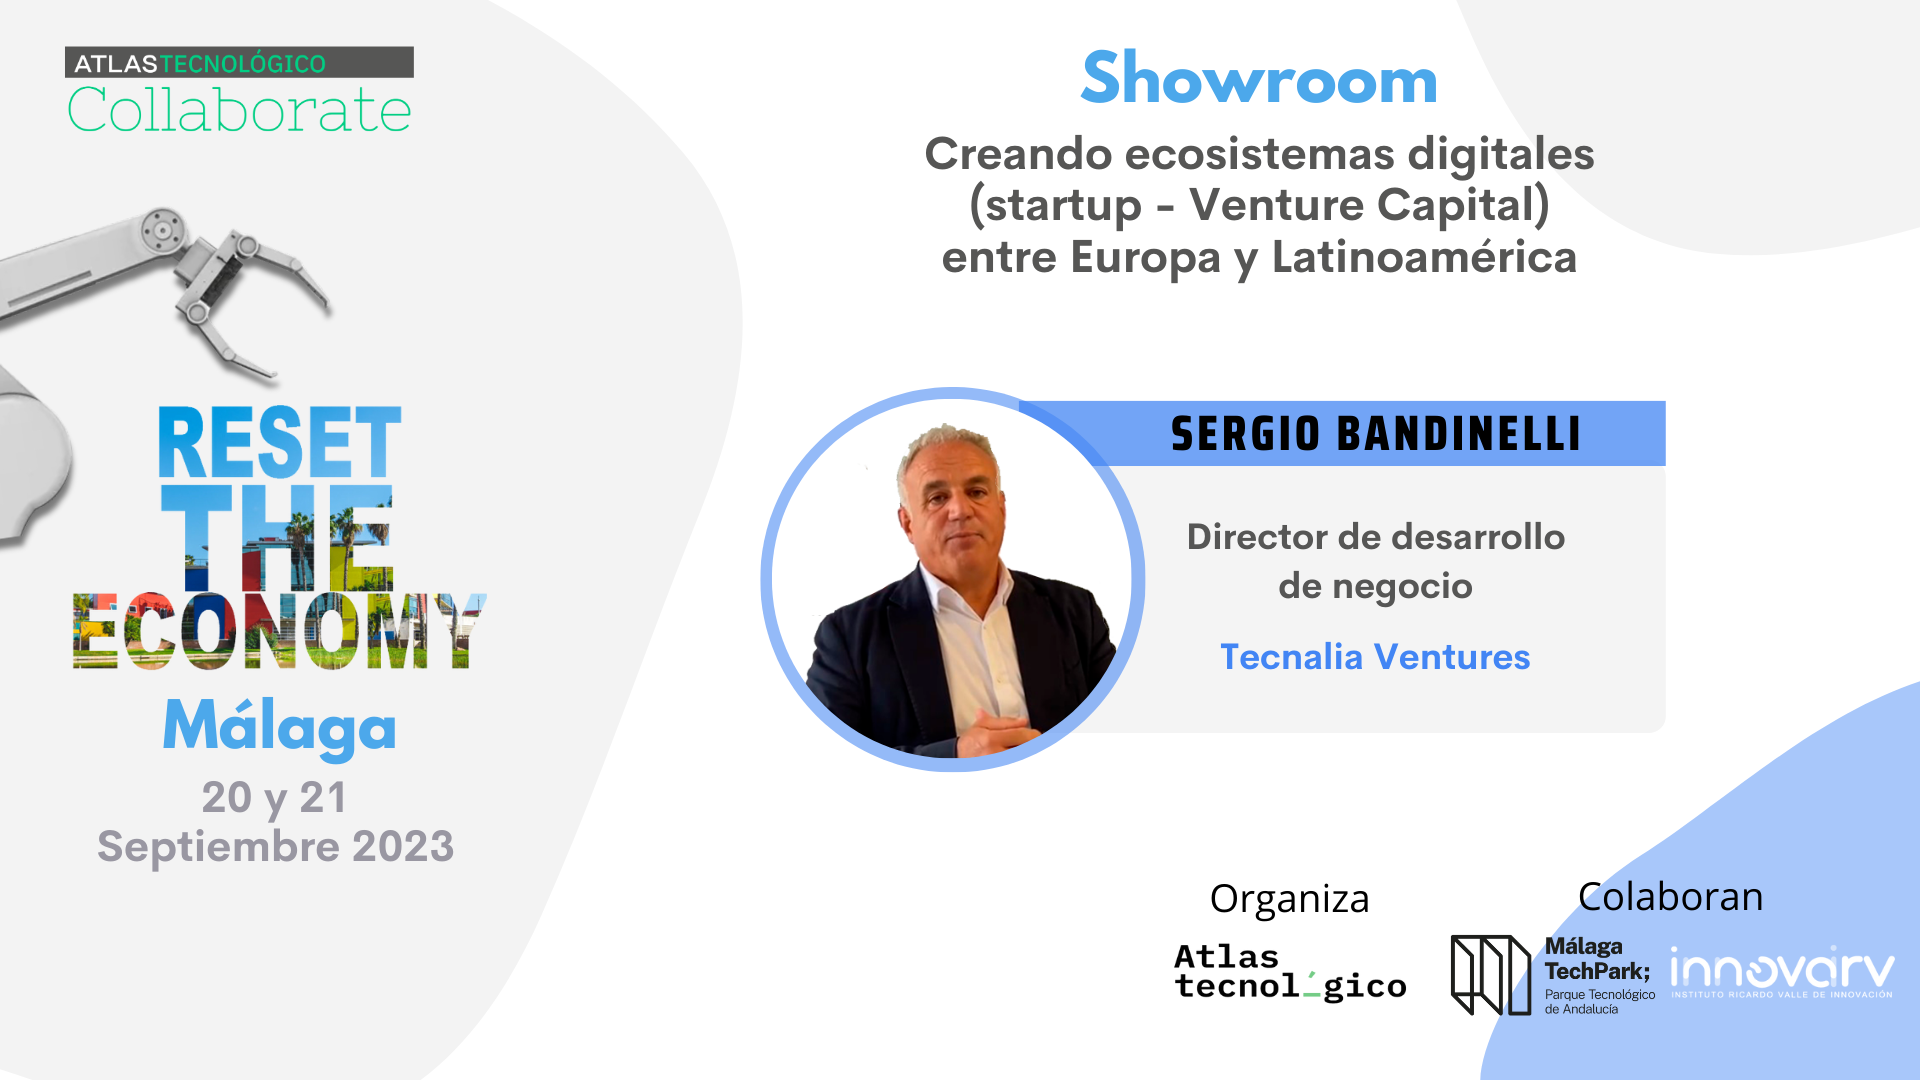 El directivo de Tecnalia Ventures Sergio Bandinelli traerá el emprendimiento en deep tech al Collaborate